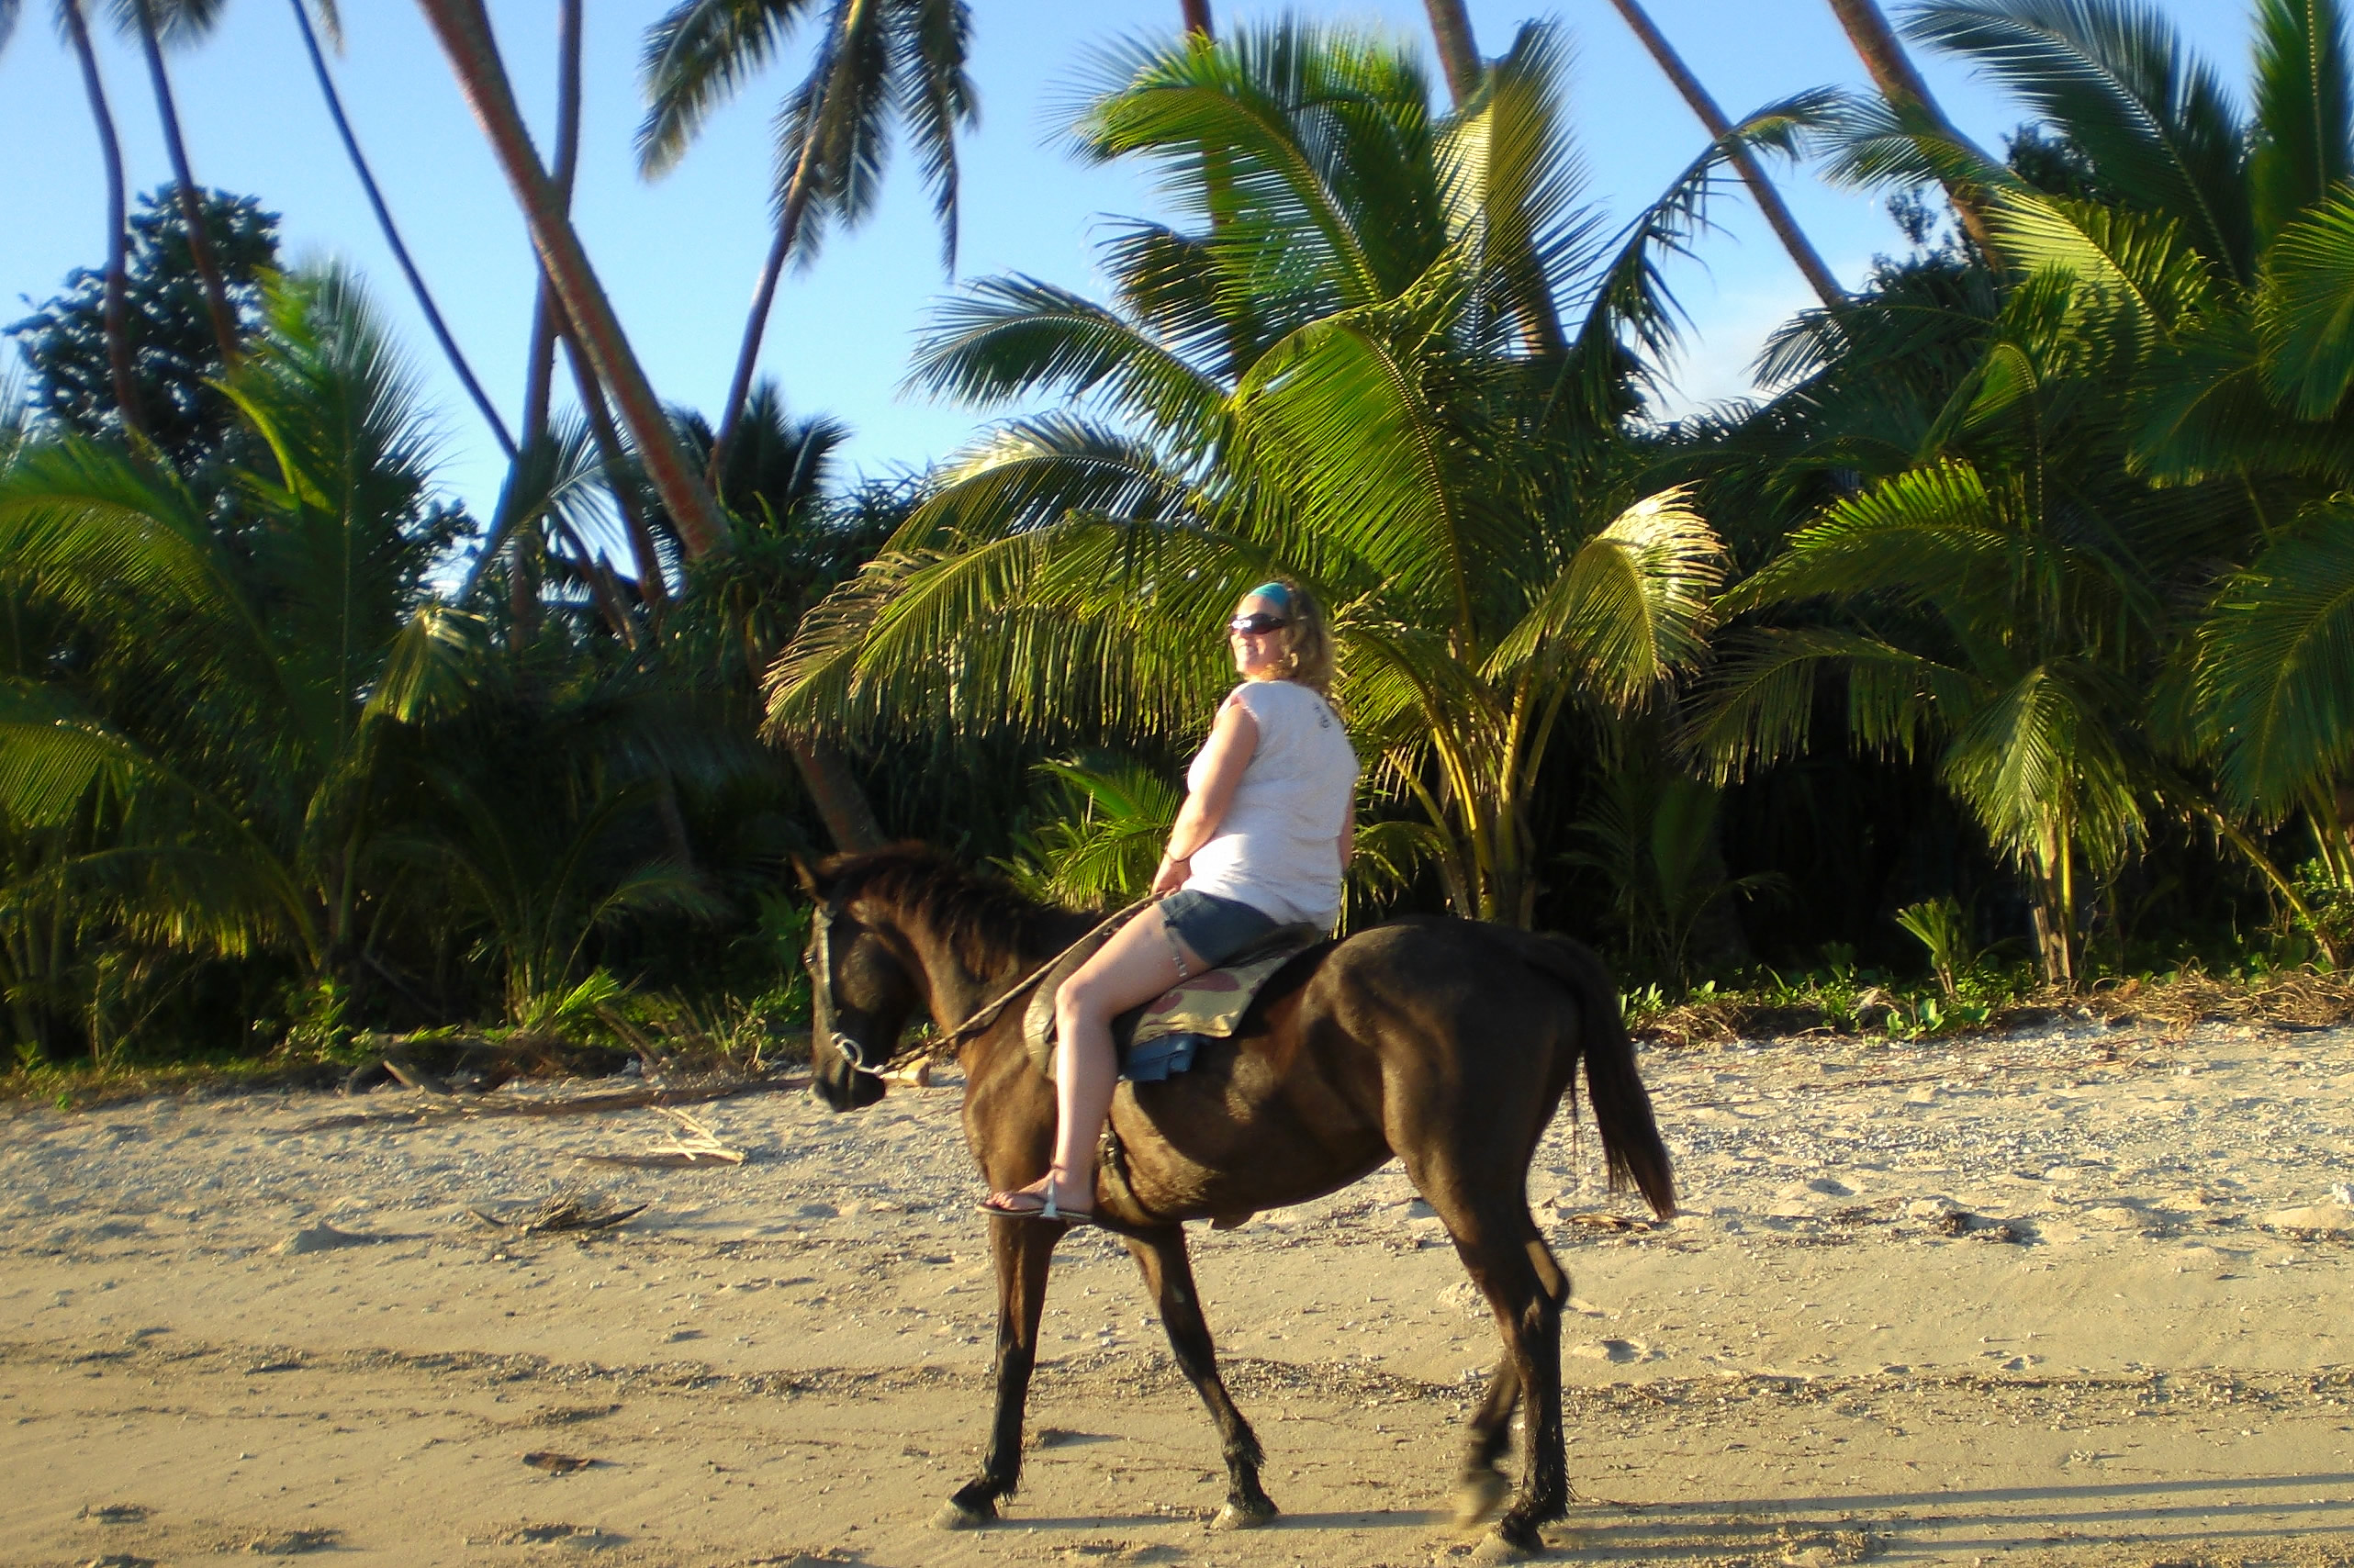 Sunset horseback ride along the beach in Fiji